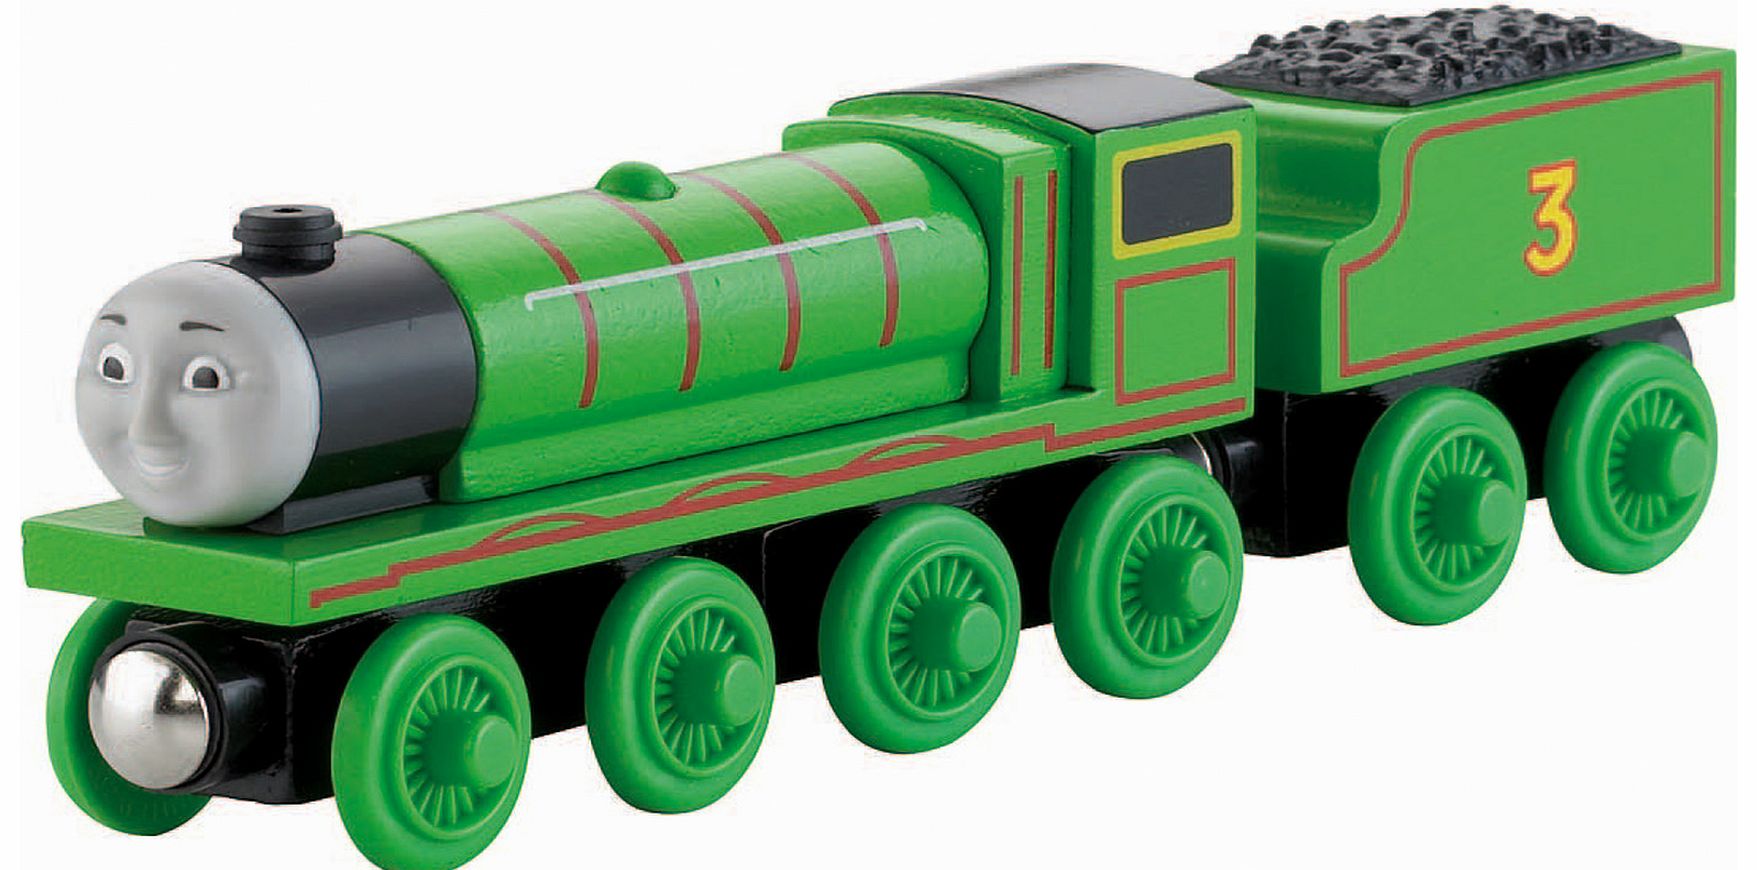 Wooden Railway Henry